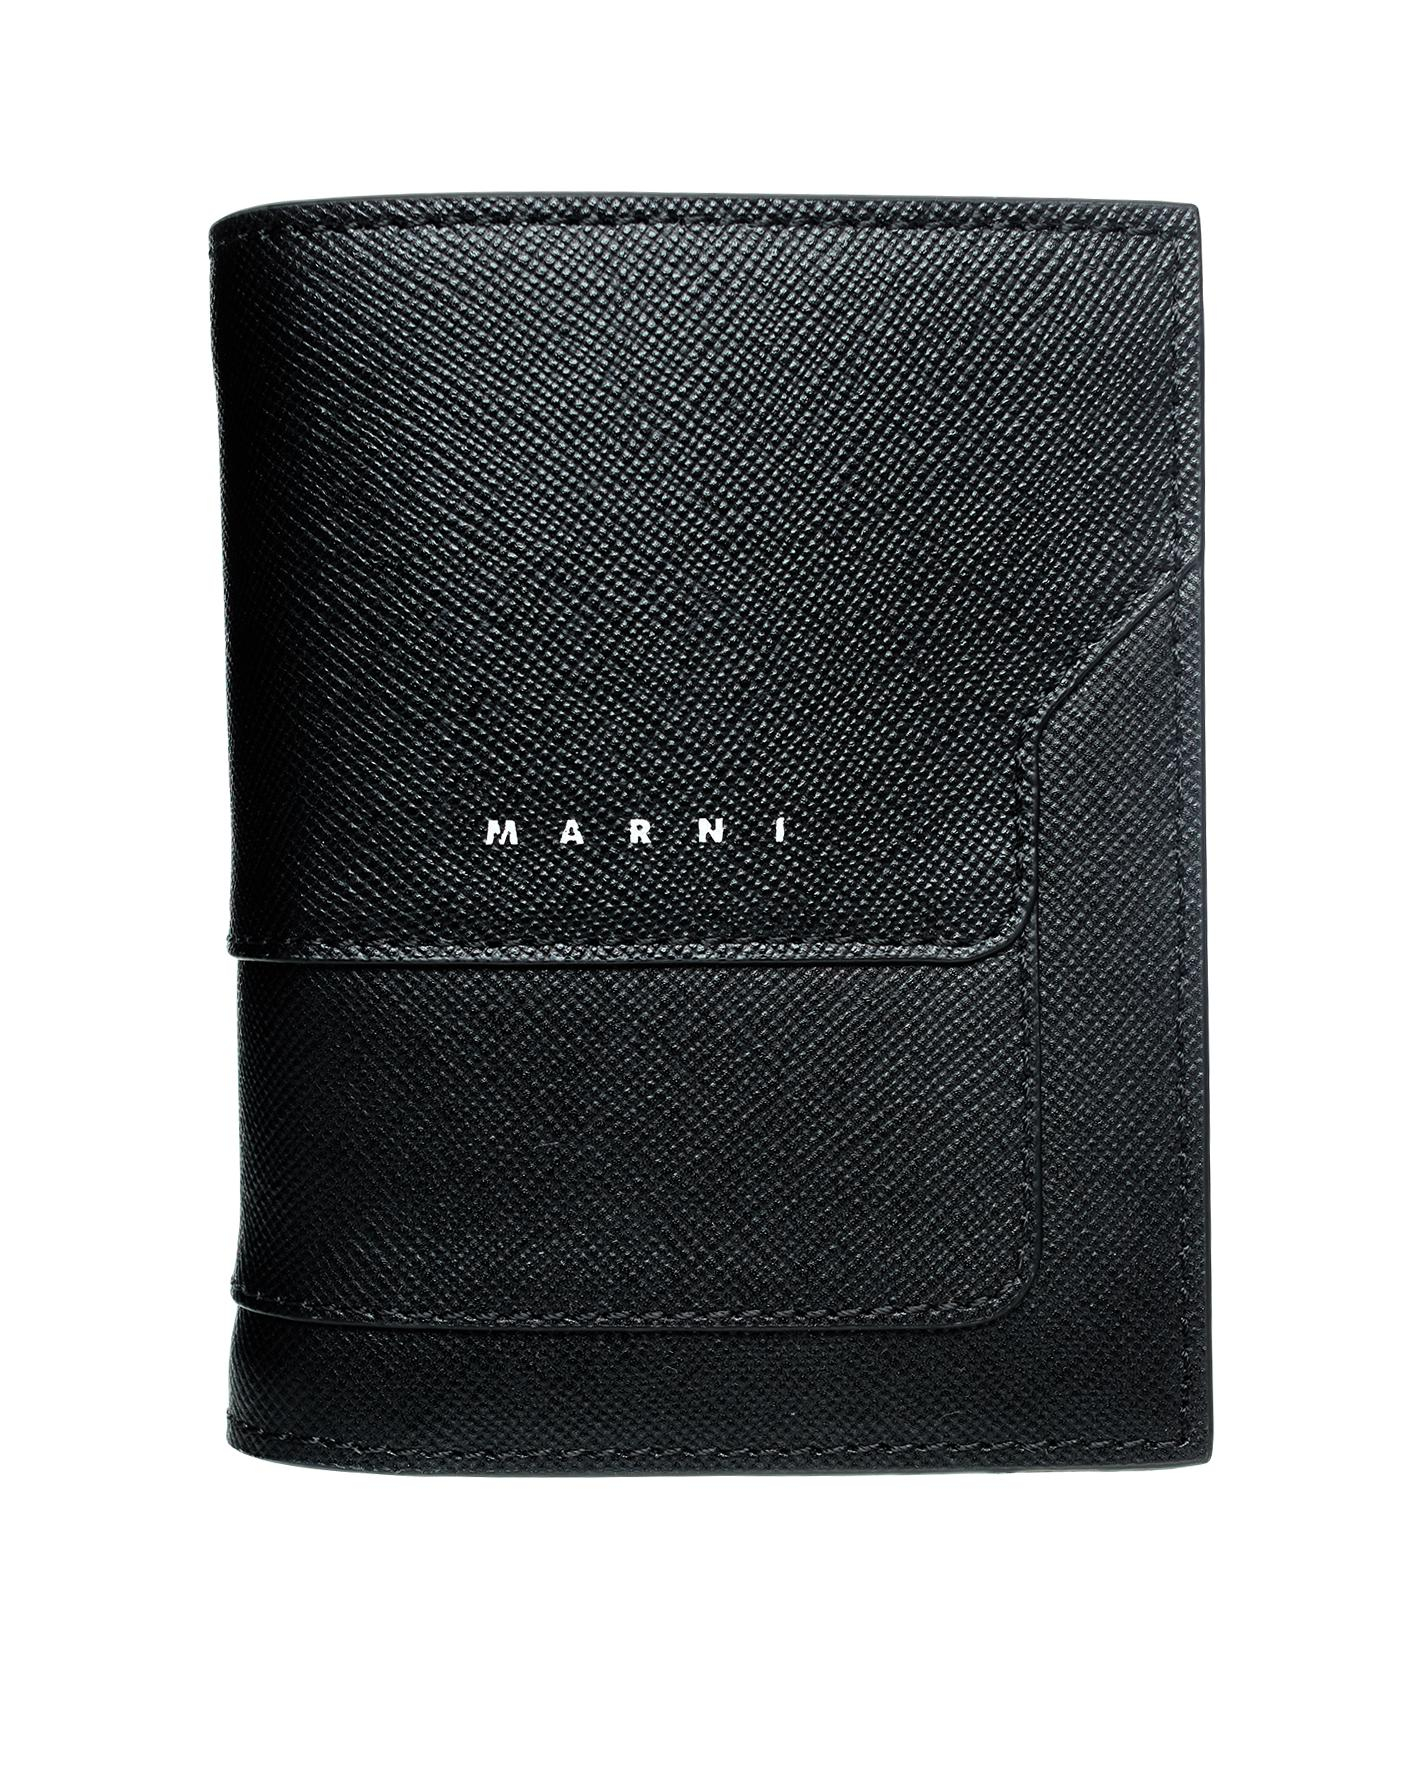 ЧЕрный кошелек из зернистой кожи с логотипом Marni PFMI0046U0/LV520/Z356N, размер One Size